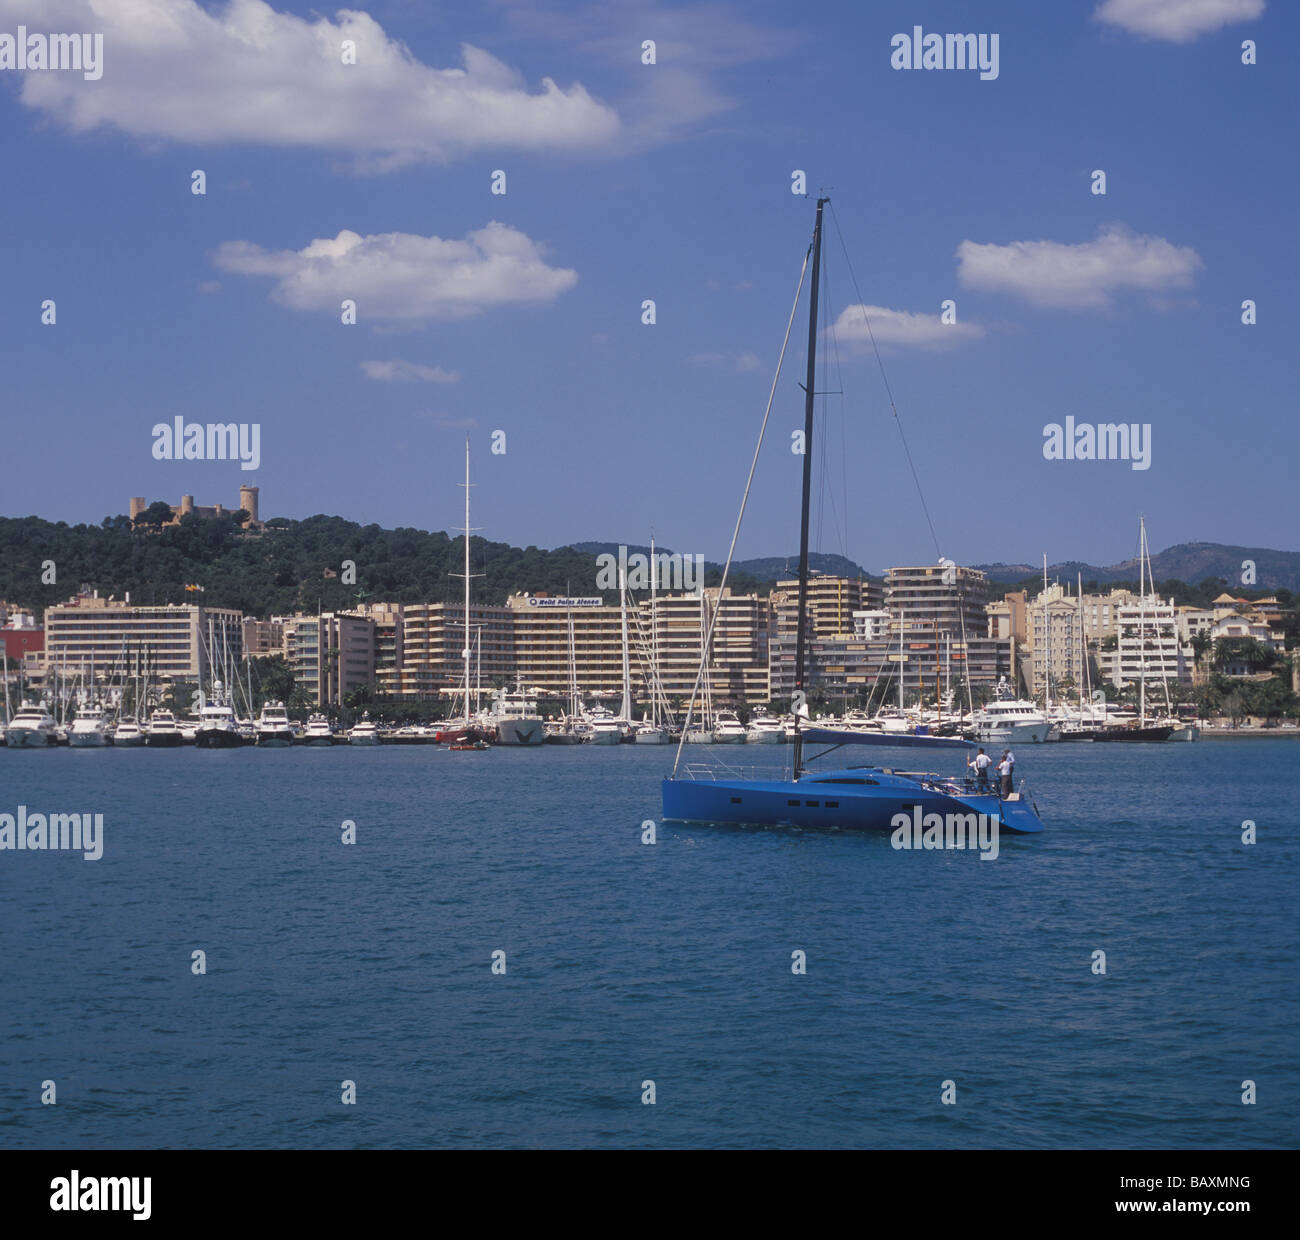 Zeydon Z60 ( 18.3 mtr ) yacht a vela ( design innovativo in collaborazione con BMW design works USA ), Palma Mallorca Foto Stock